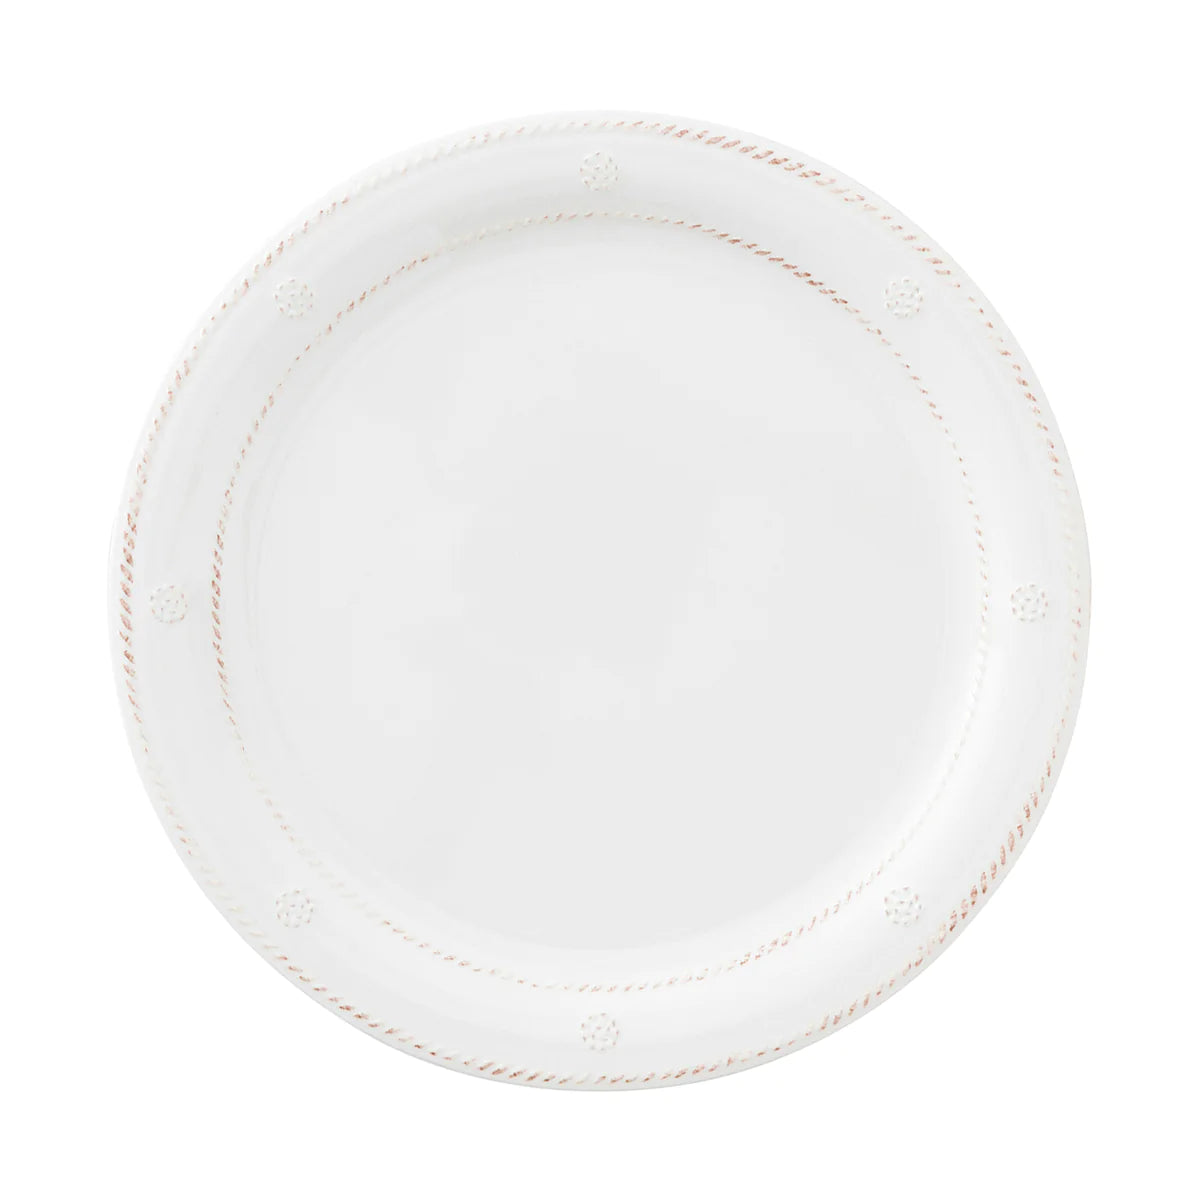 Berry & Thread Melamine Dinner Plate - Whitewash